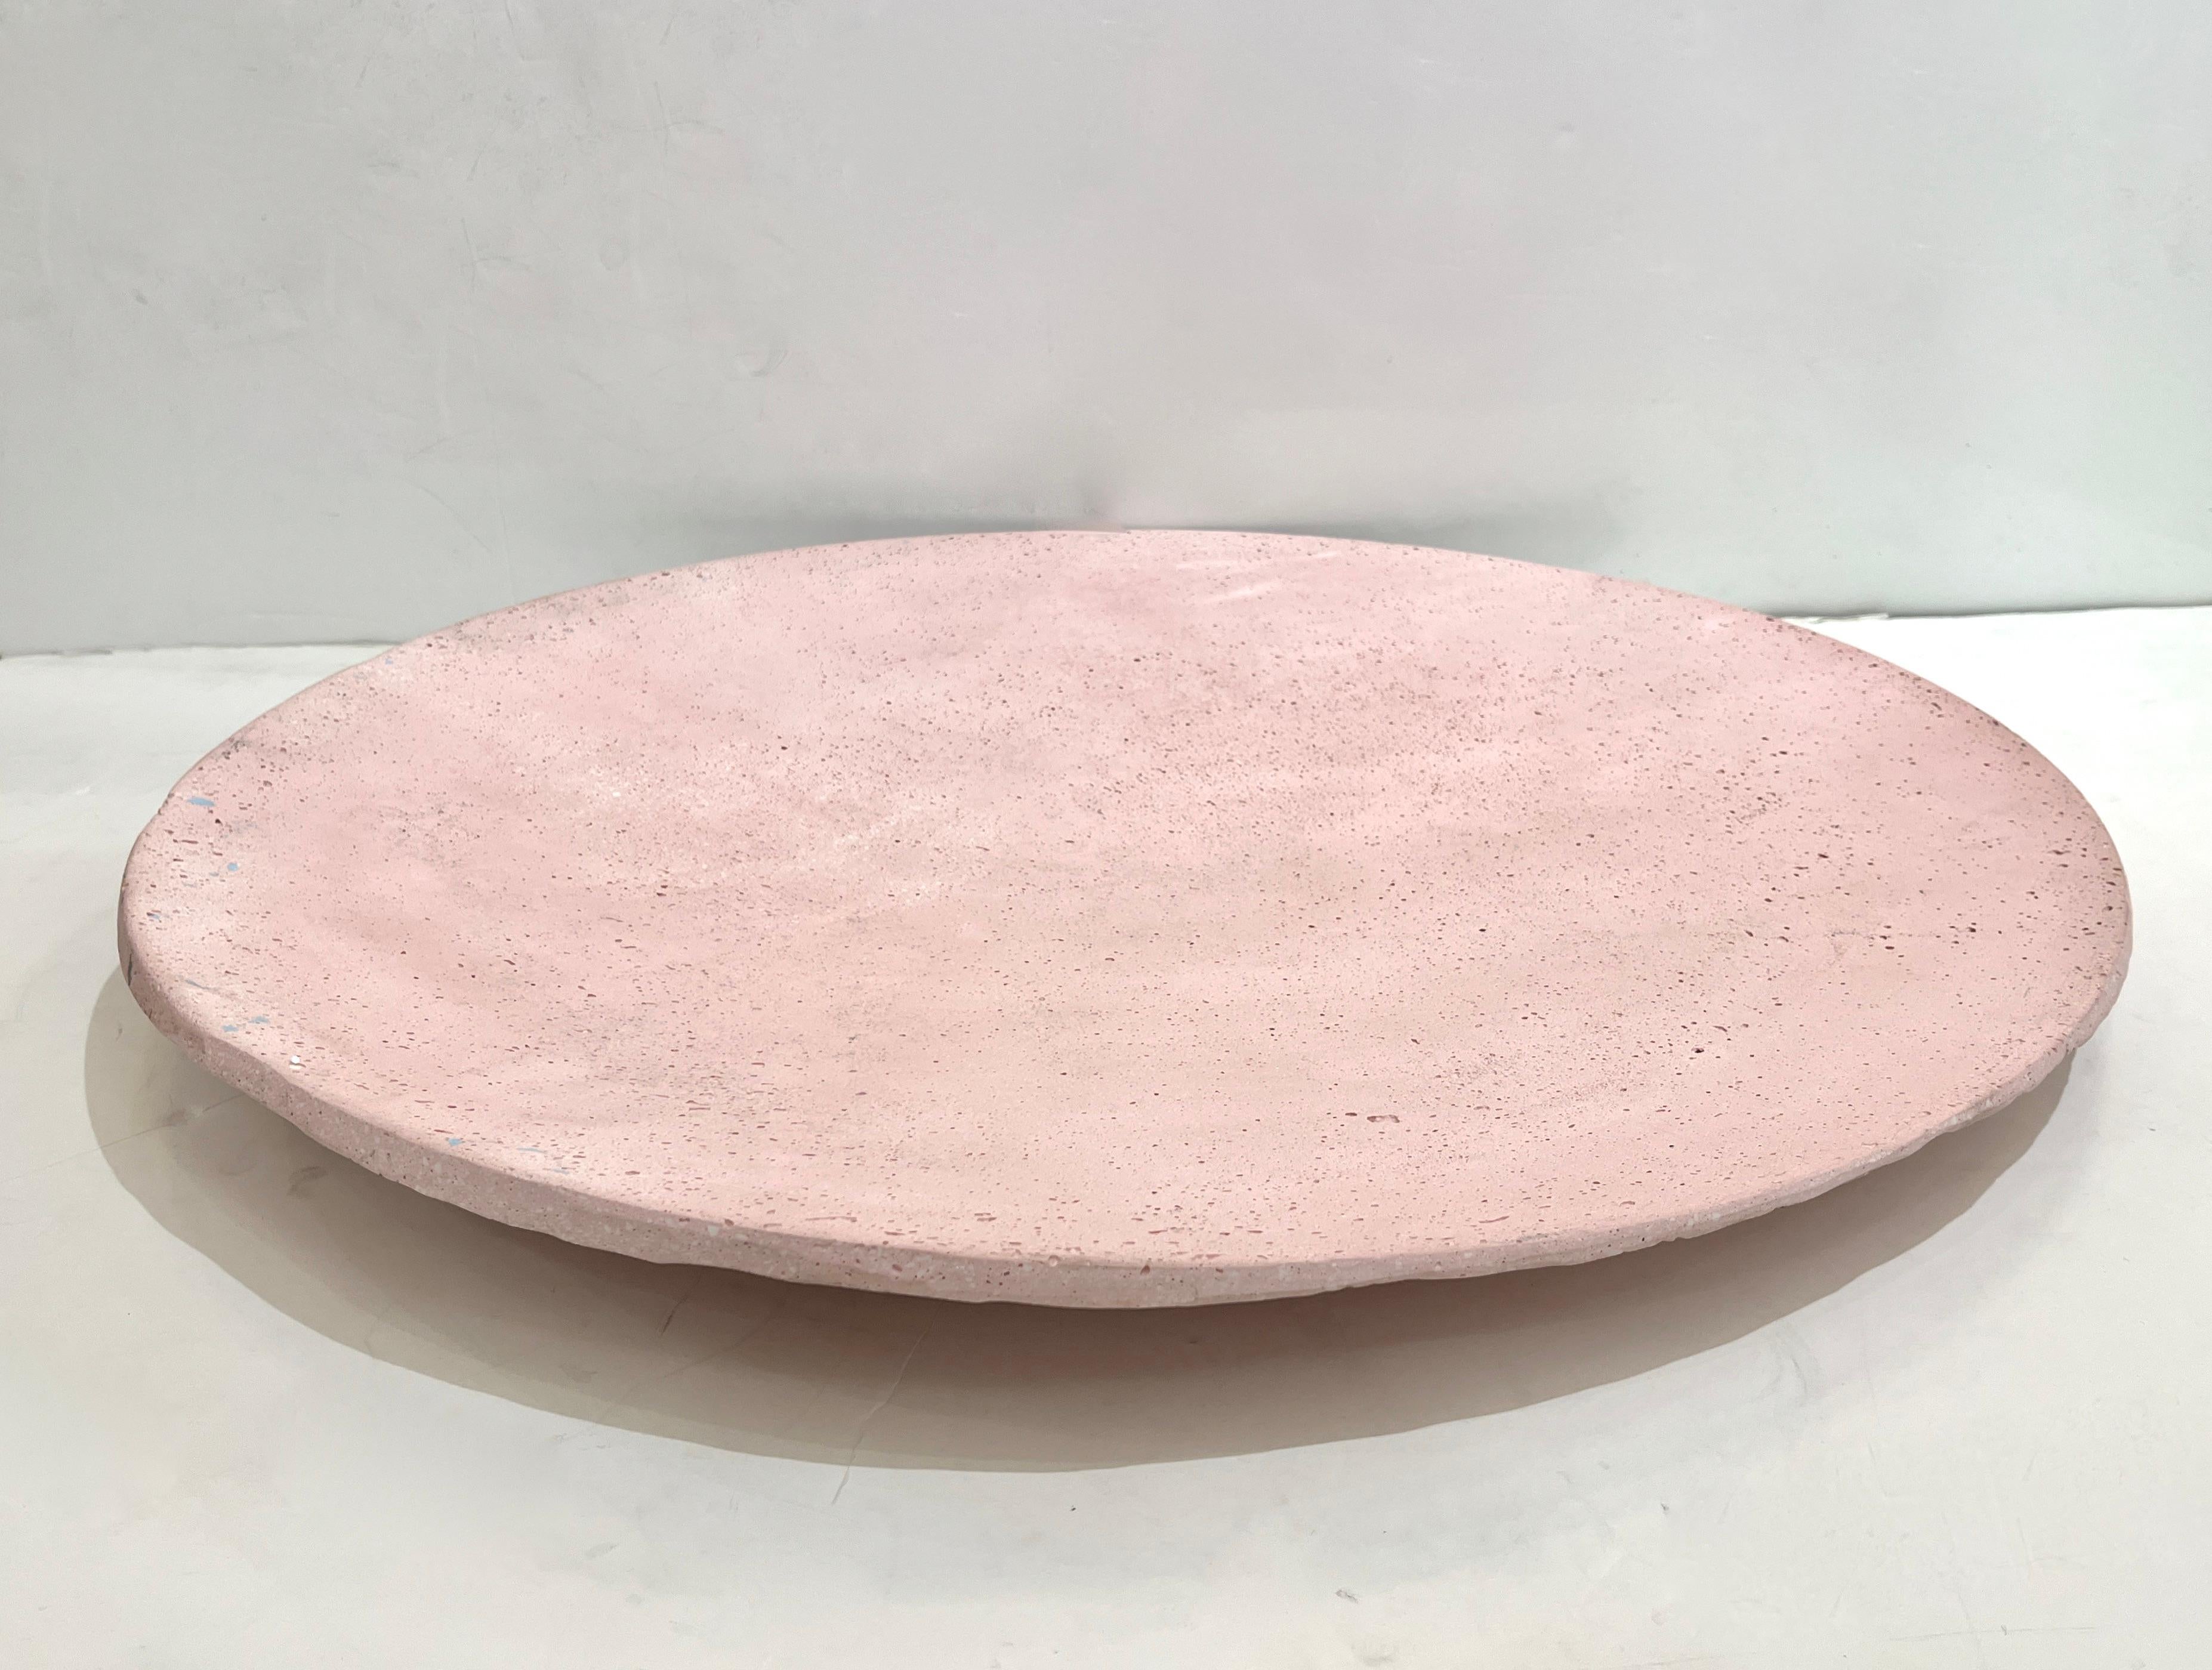 Dieser organische, amorphe Tafelaufsatz in rosafarbener Farbe mit hellblauen Einsprengseln wurde von dem italienischen Künstler und Designer GioMinelli als Herzstück von Kunst oder Wandkunst geschaffen. Das neue MATERIAL, das der Künstler unter